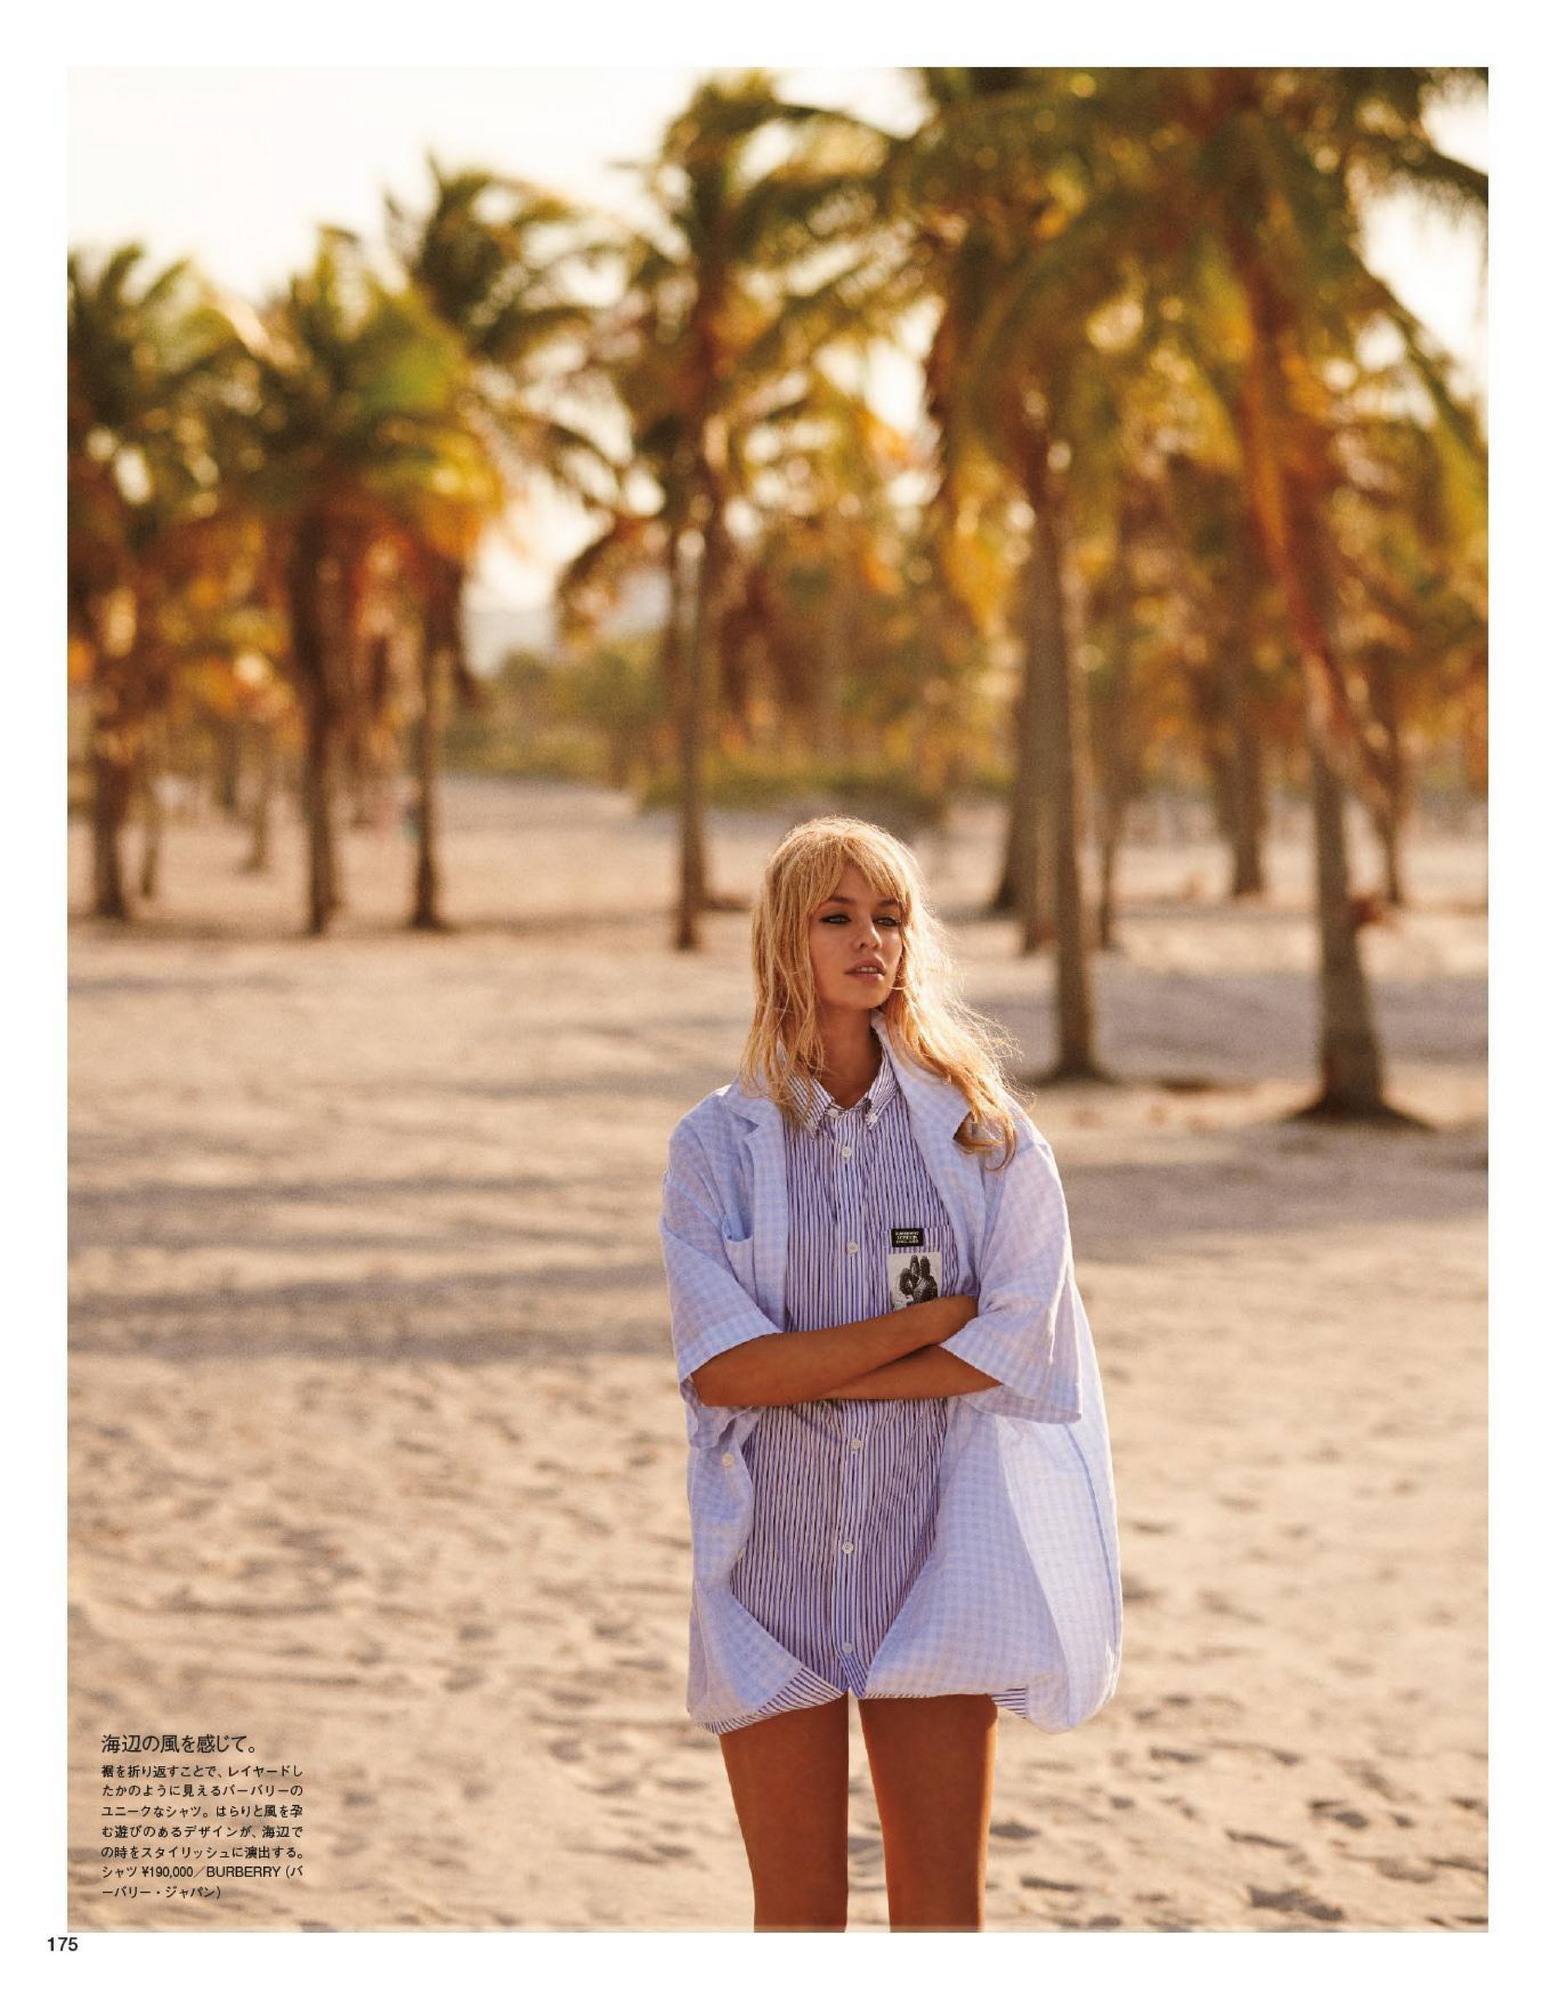 Fotos n°6 : Stella Maxwell Beachin' it For Vogue!